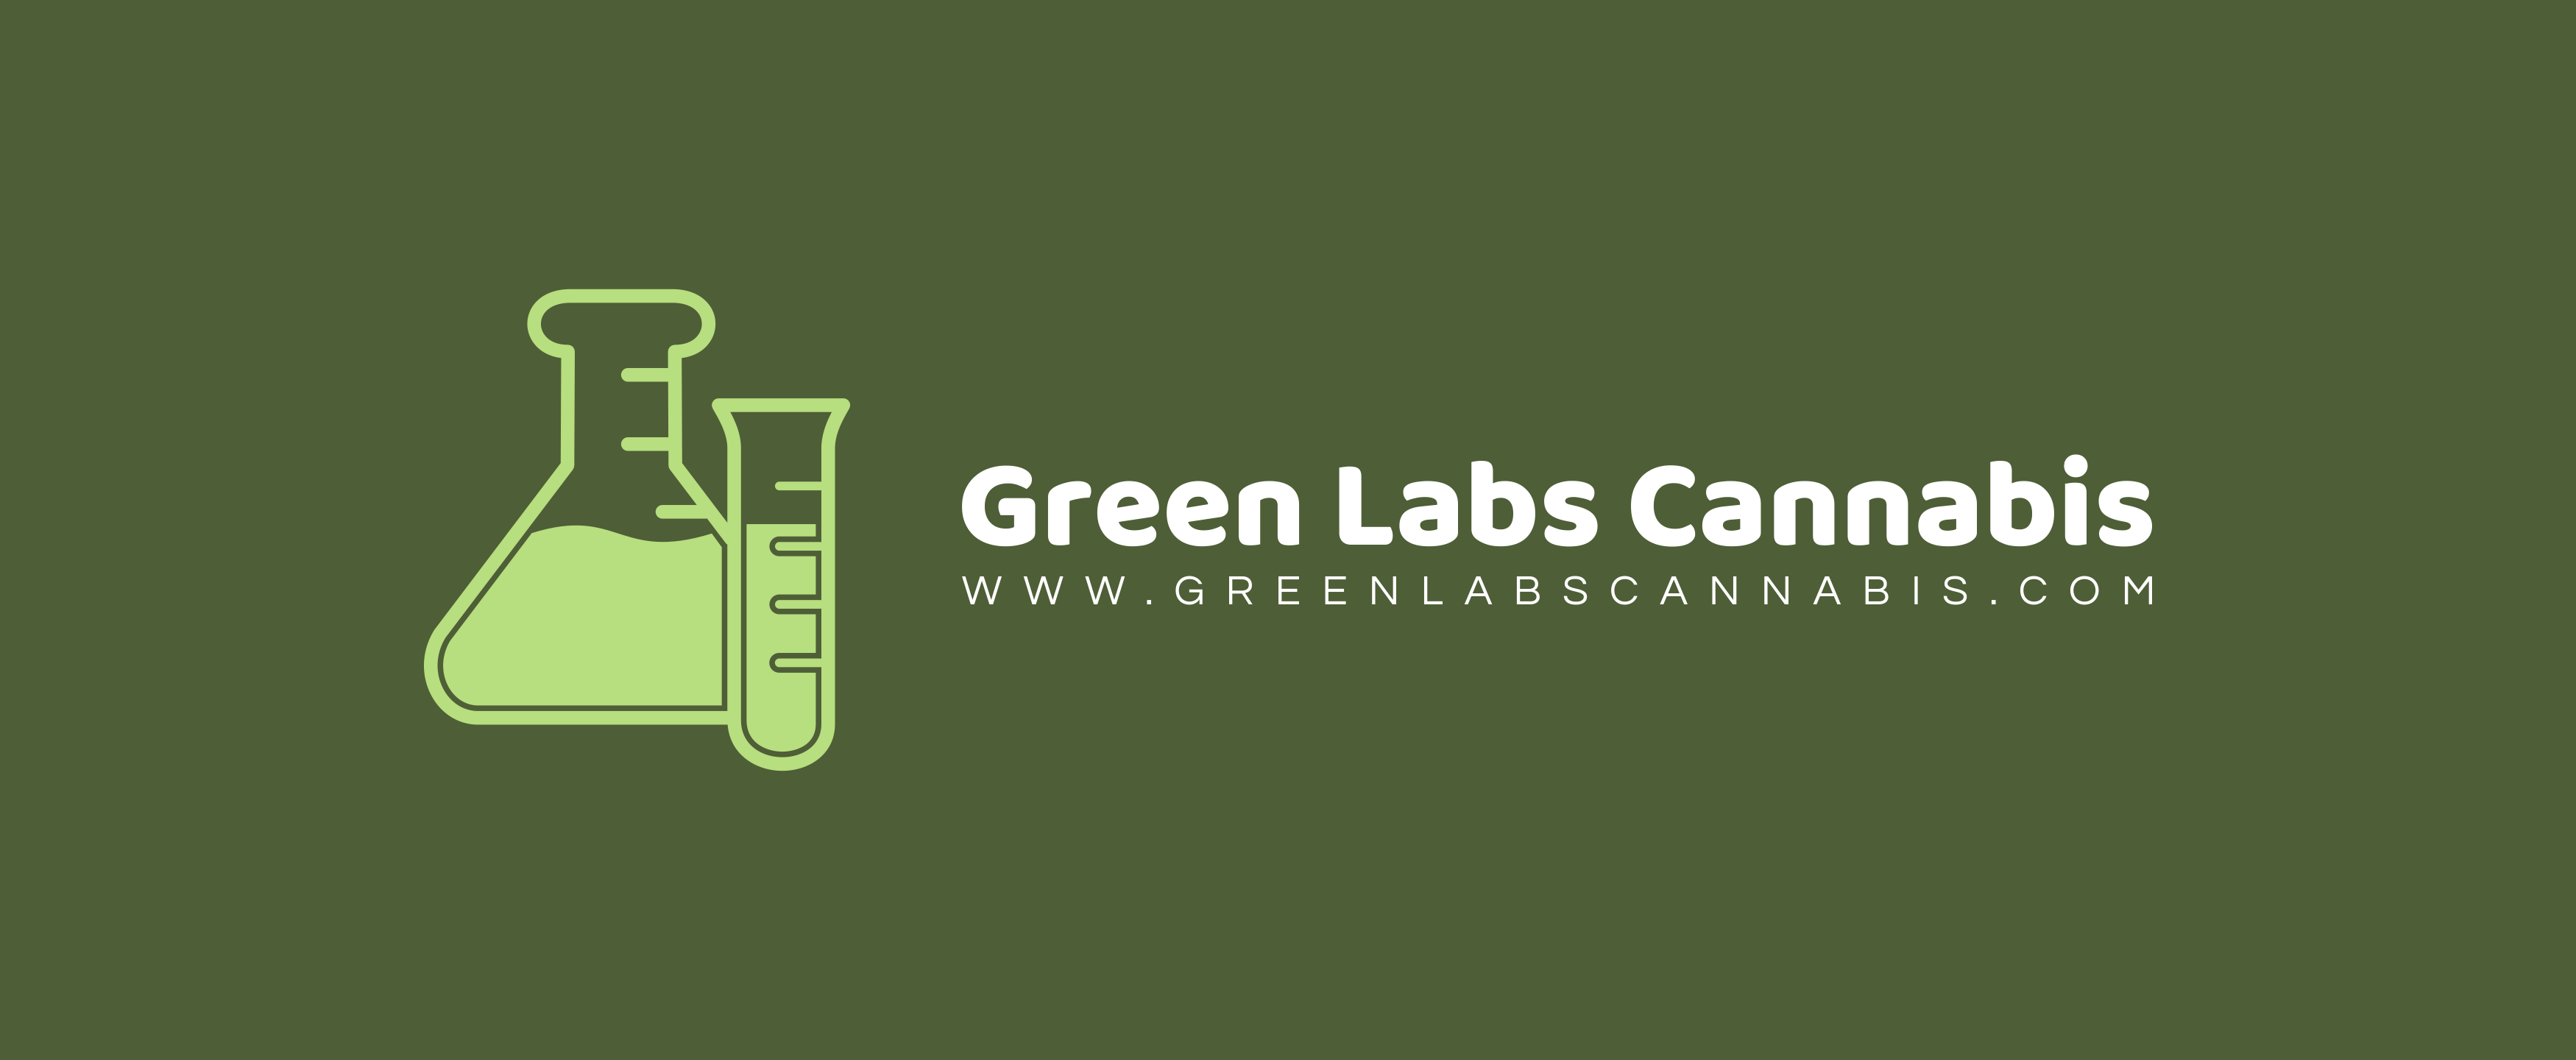 Green Labs Cannabis